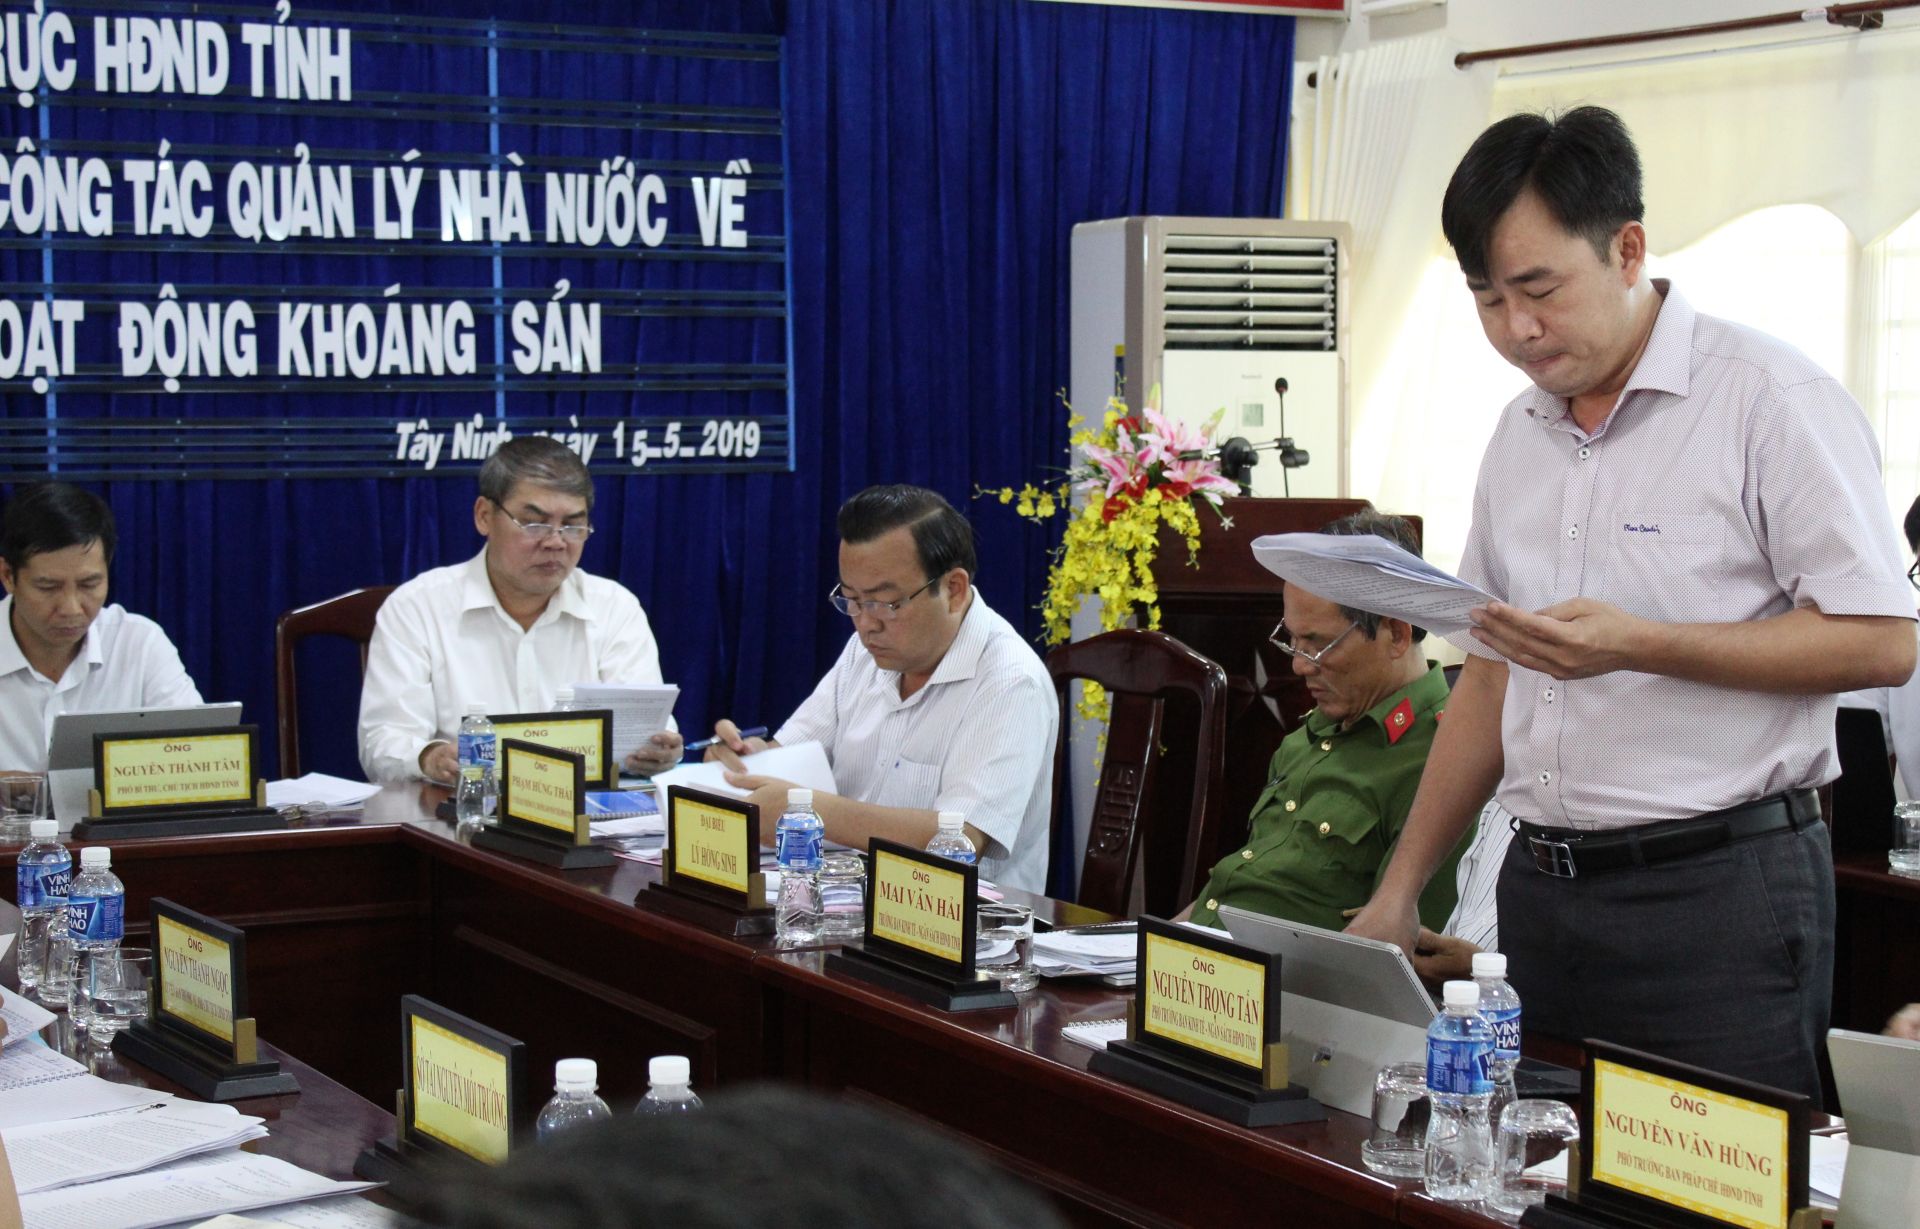 Điểm báo in Tây Ninh ngày 17.05.2019